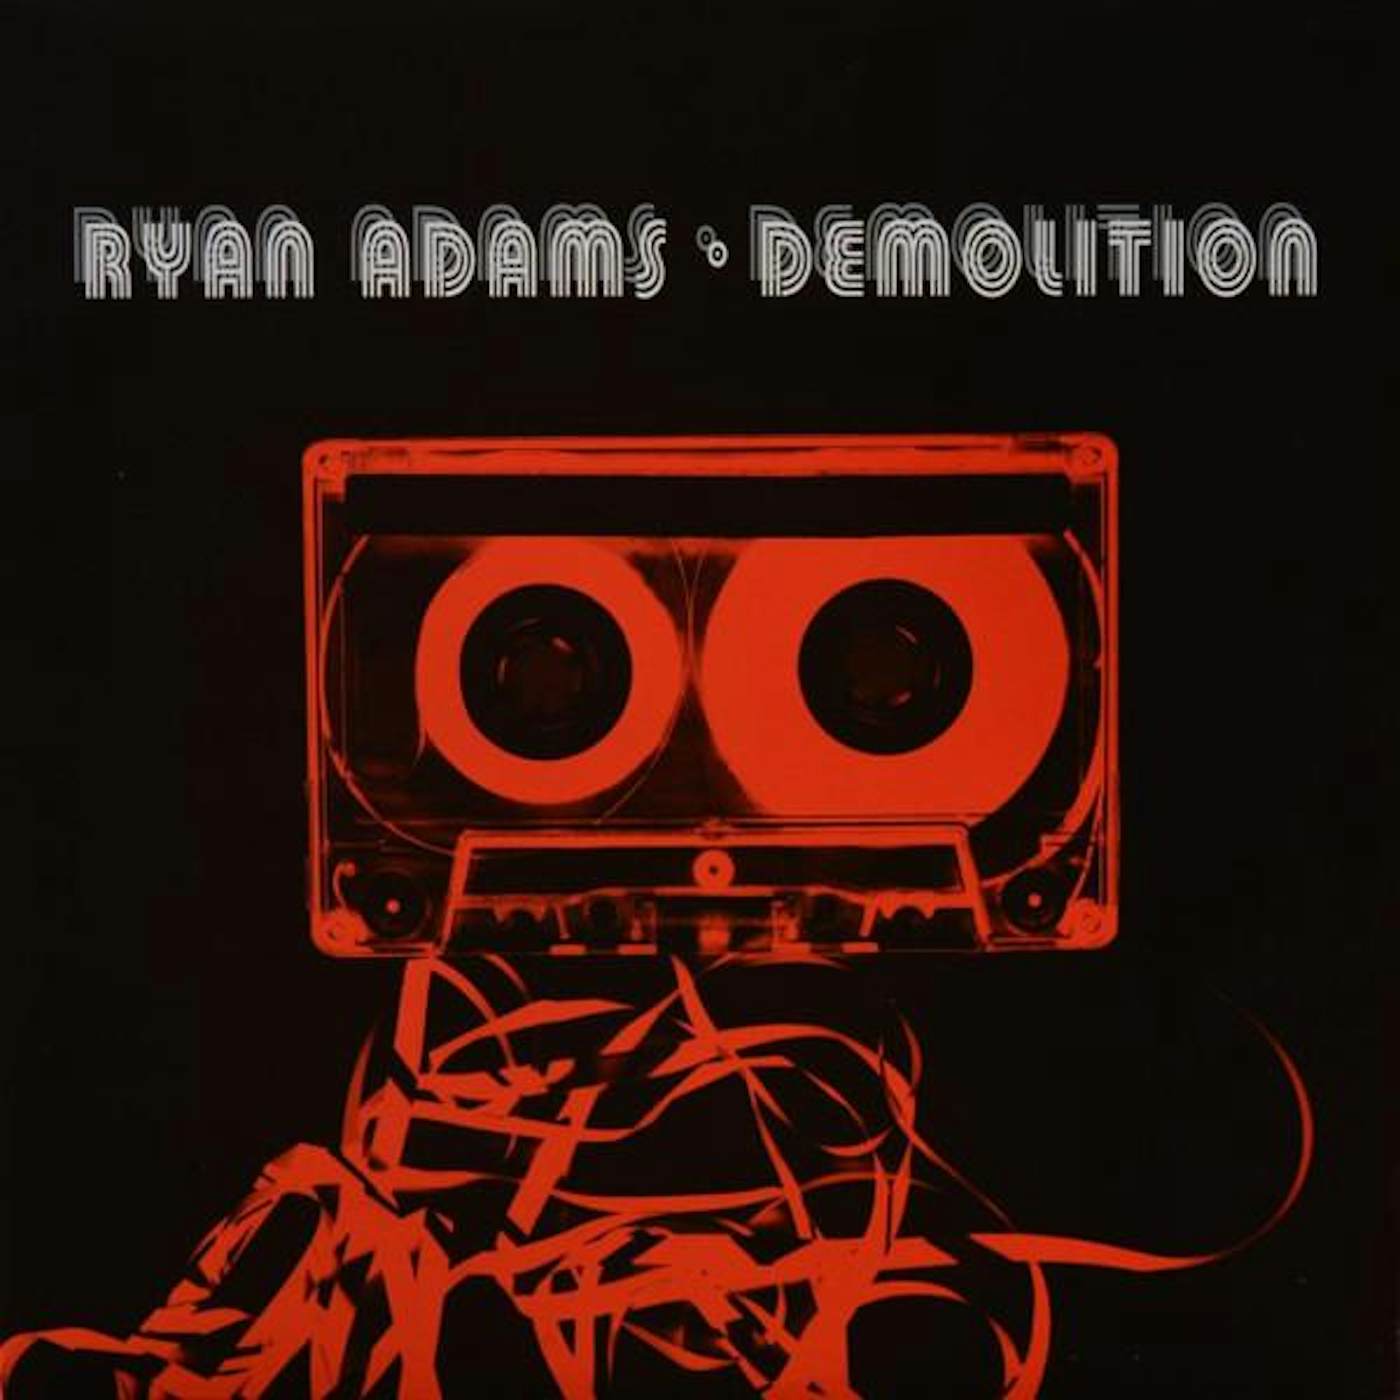 Ryan Adams DEMOLITION Vinyl Record